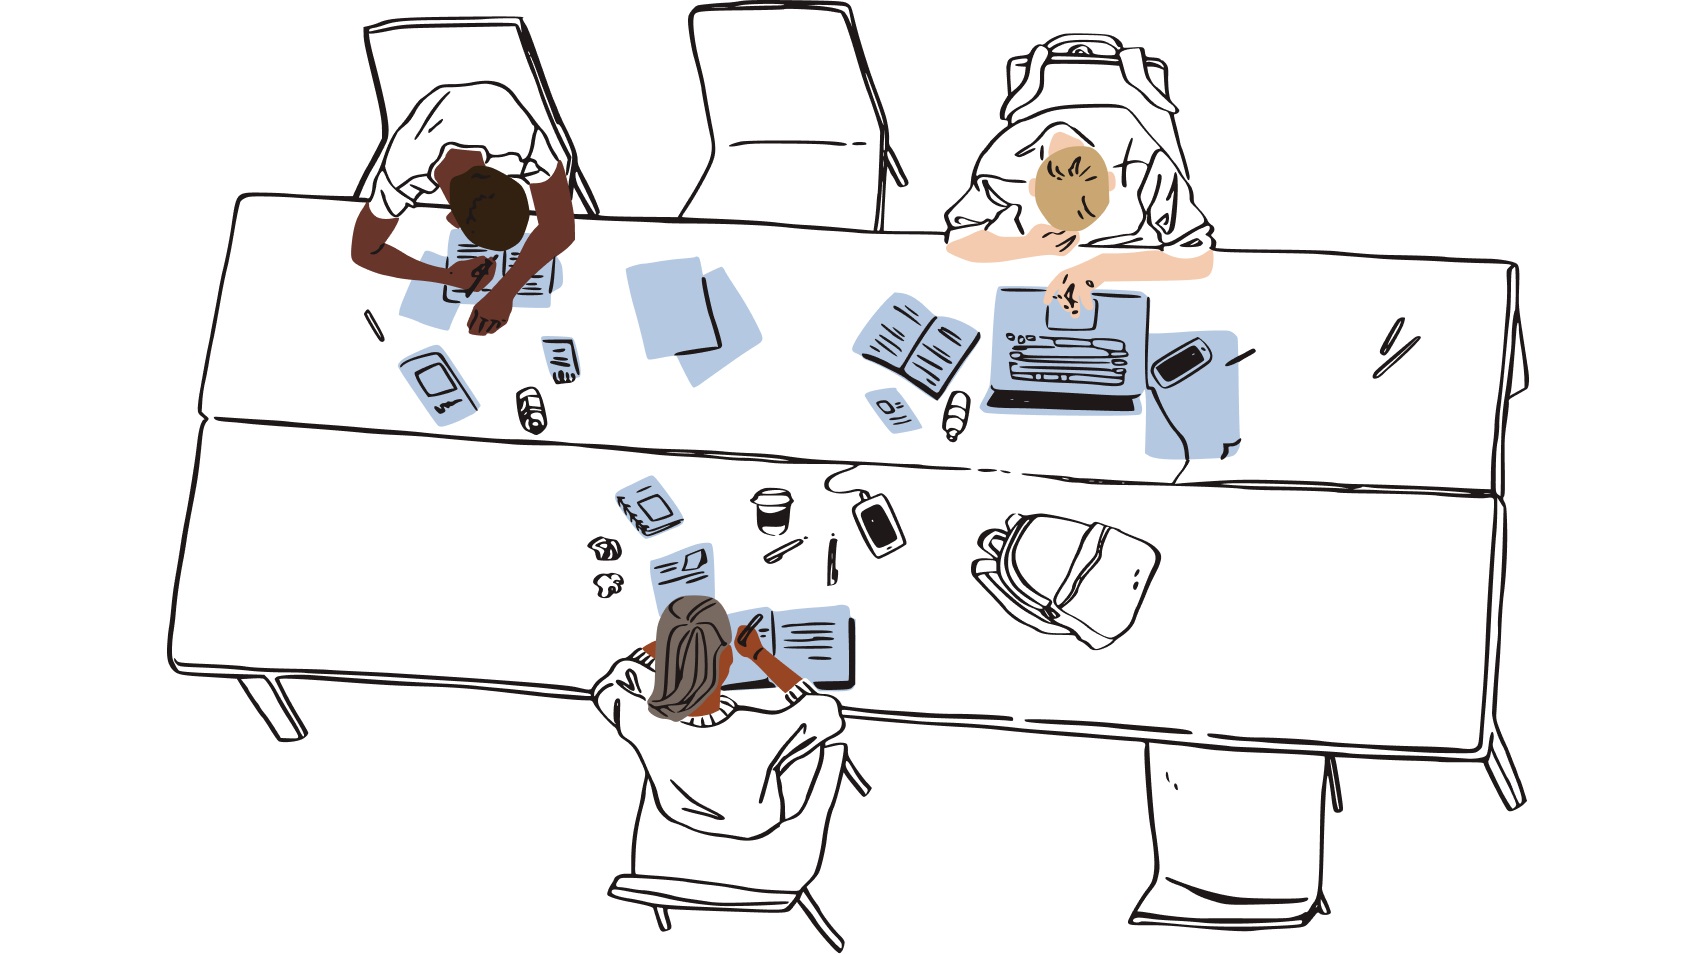 Menschen arbeiten an einem unordentlichen Schreibtisch mit mehreren Geräten und vielen Dateien um sie herum.